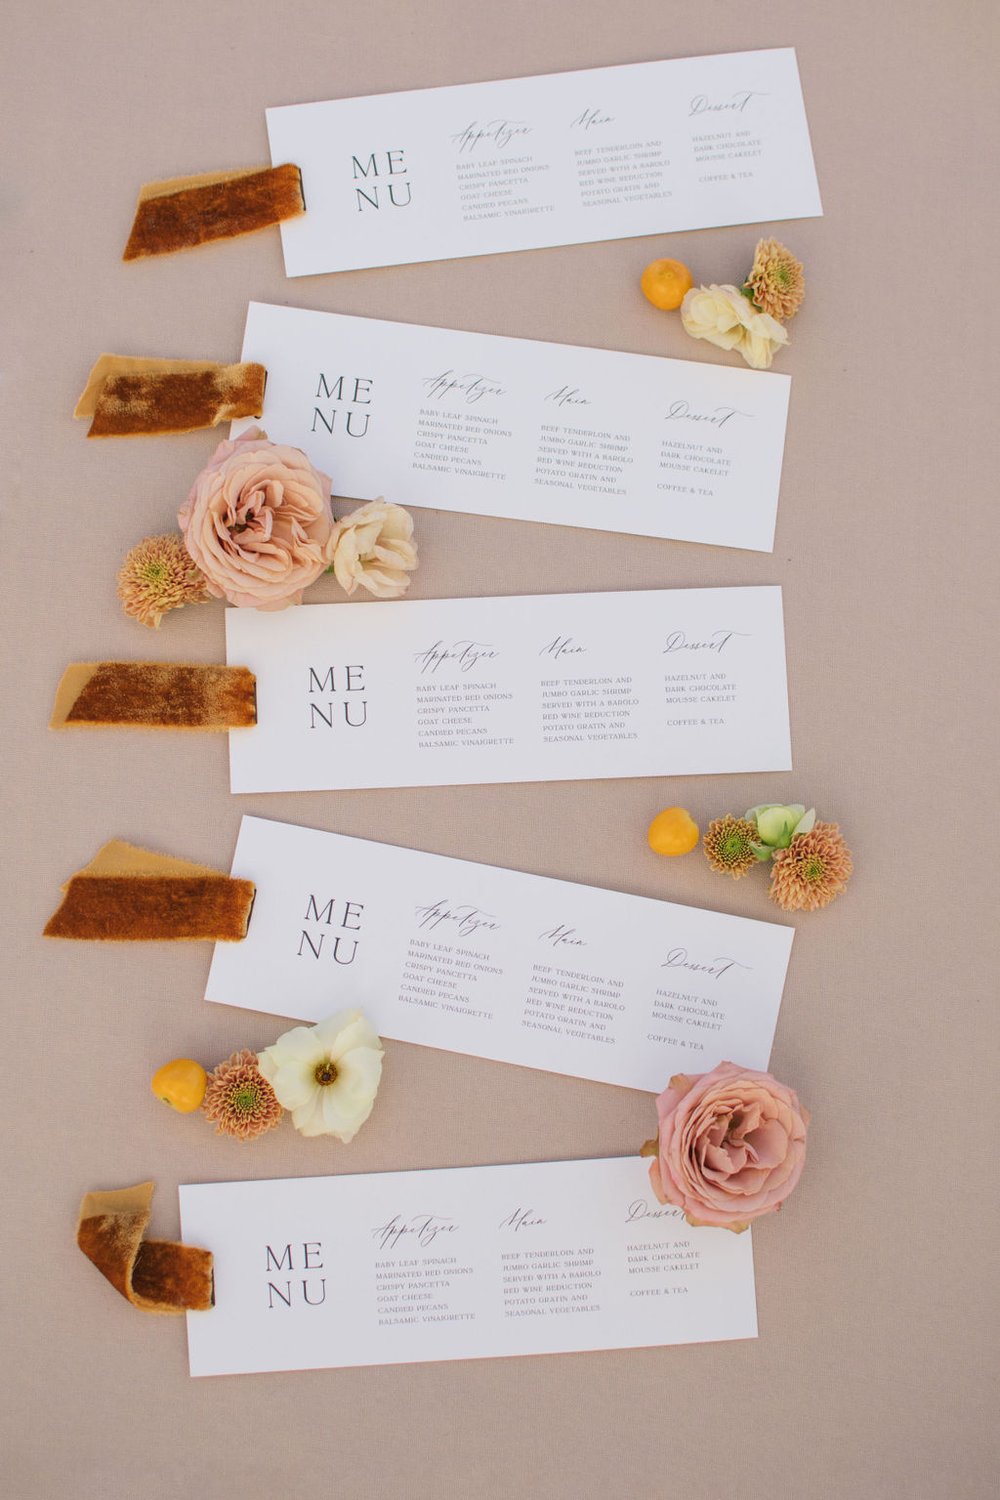 Custom wedding menu cards designed by Paper Palette with brunt orange velvet ribbon accents.